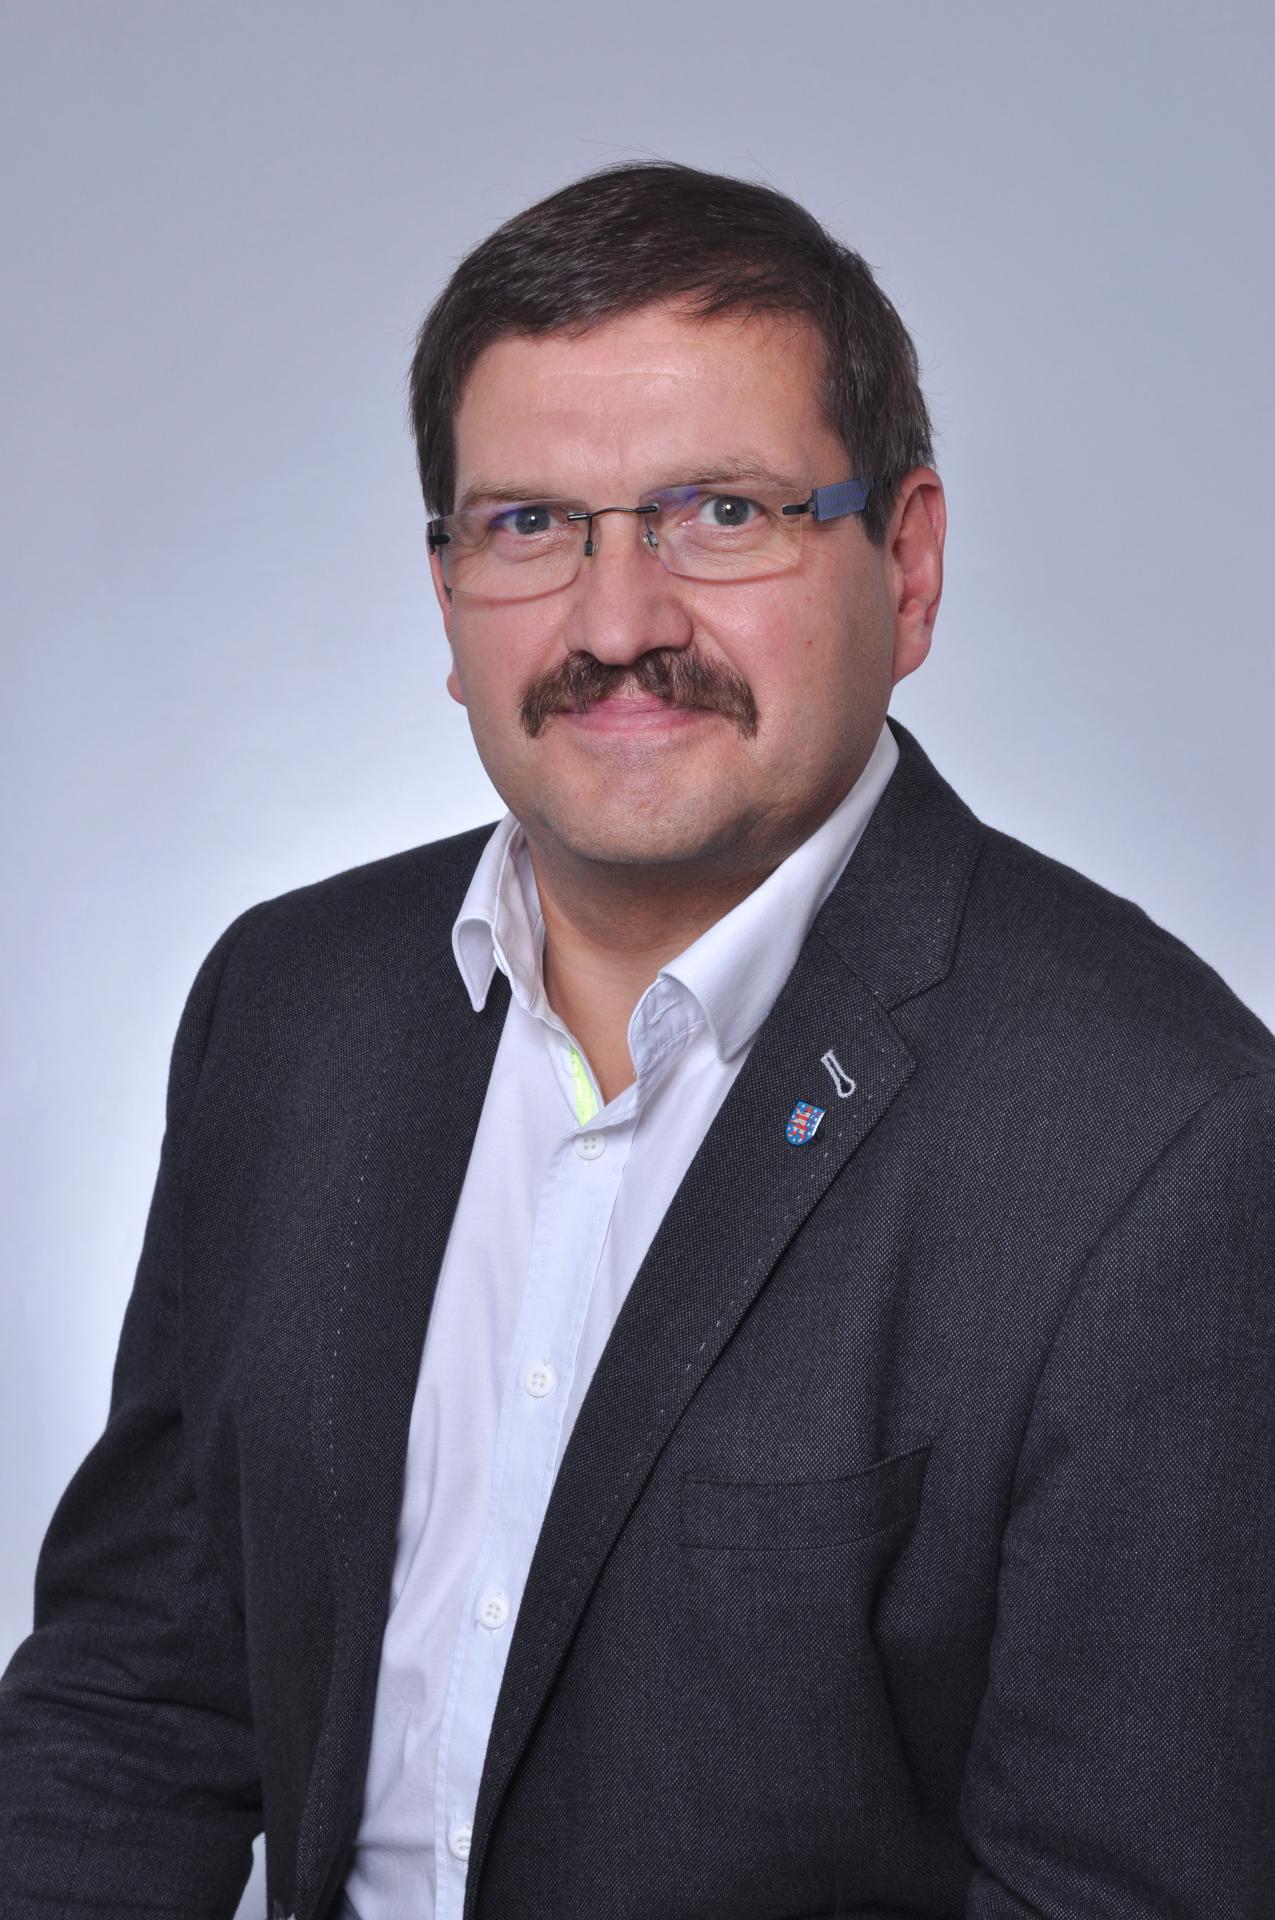 Herr Uwe Scheler, Bürgermeister der Stadt Neuhaus am Rennweg